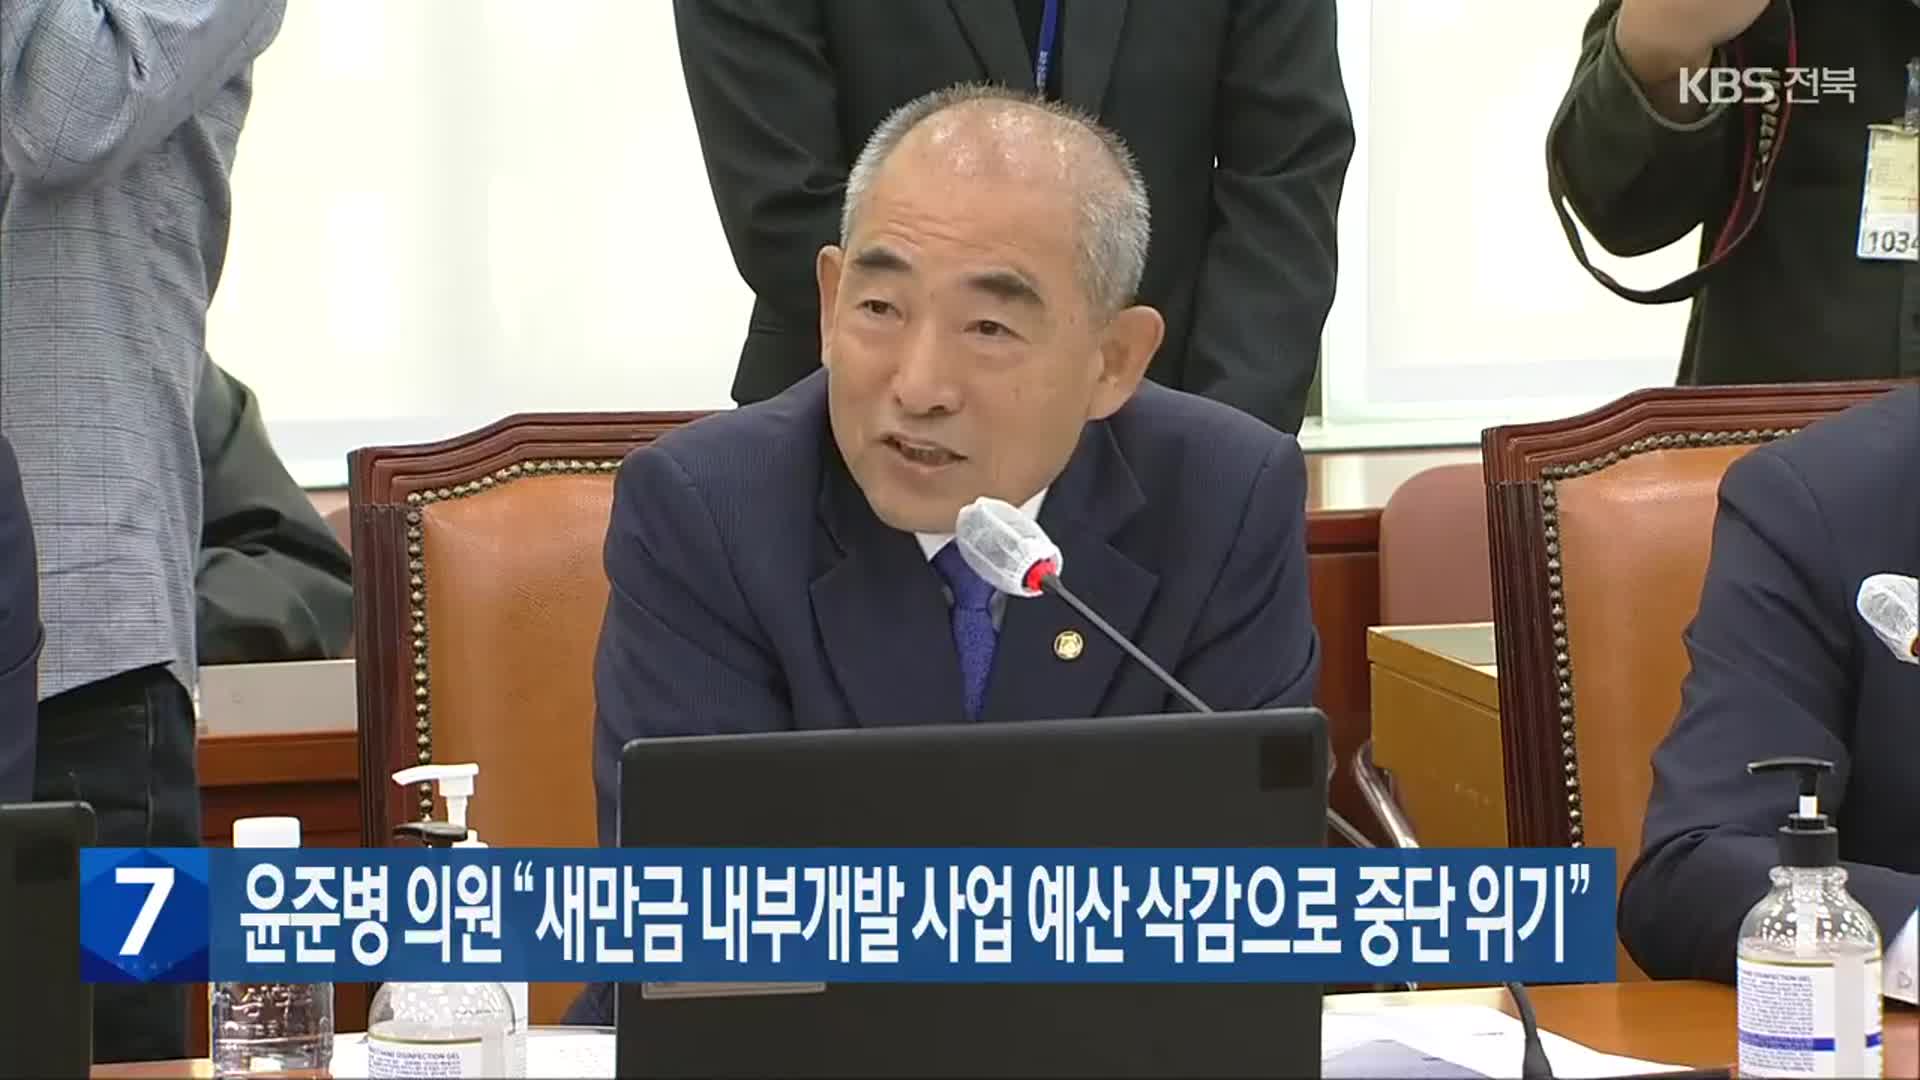 윤준병 의원 “새만금 내부개발 사업 예산 삭감으로 중단 위기”